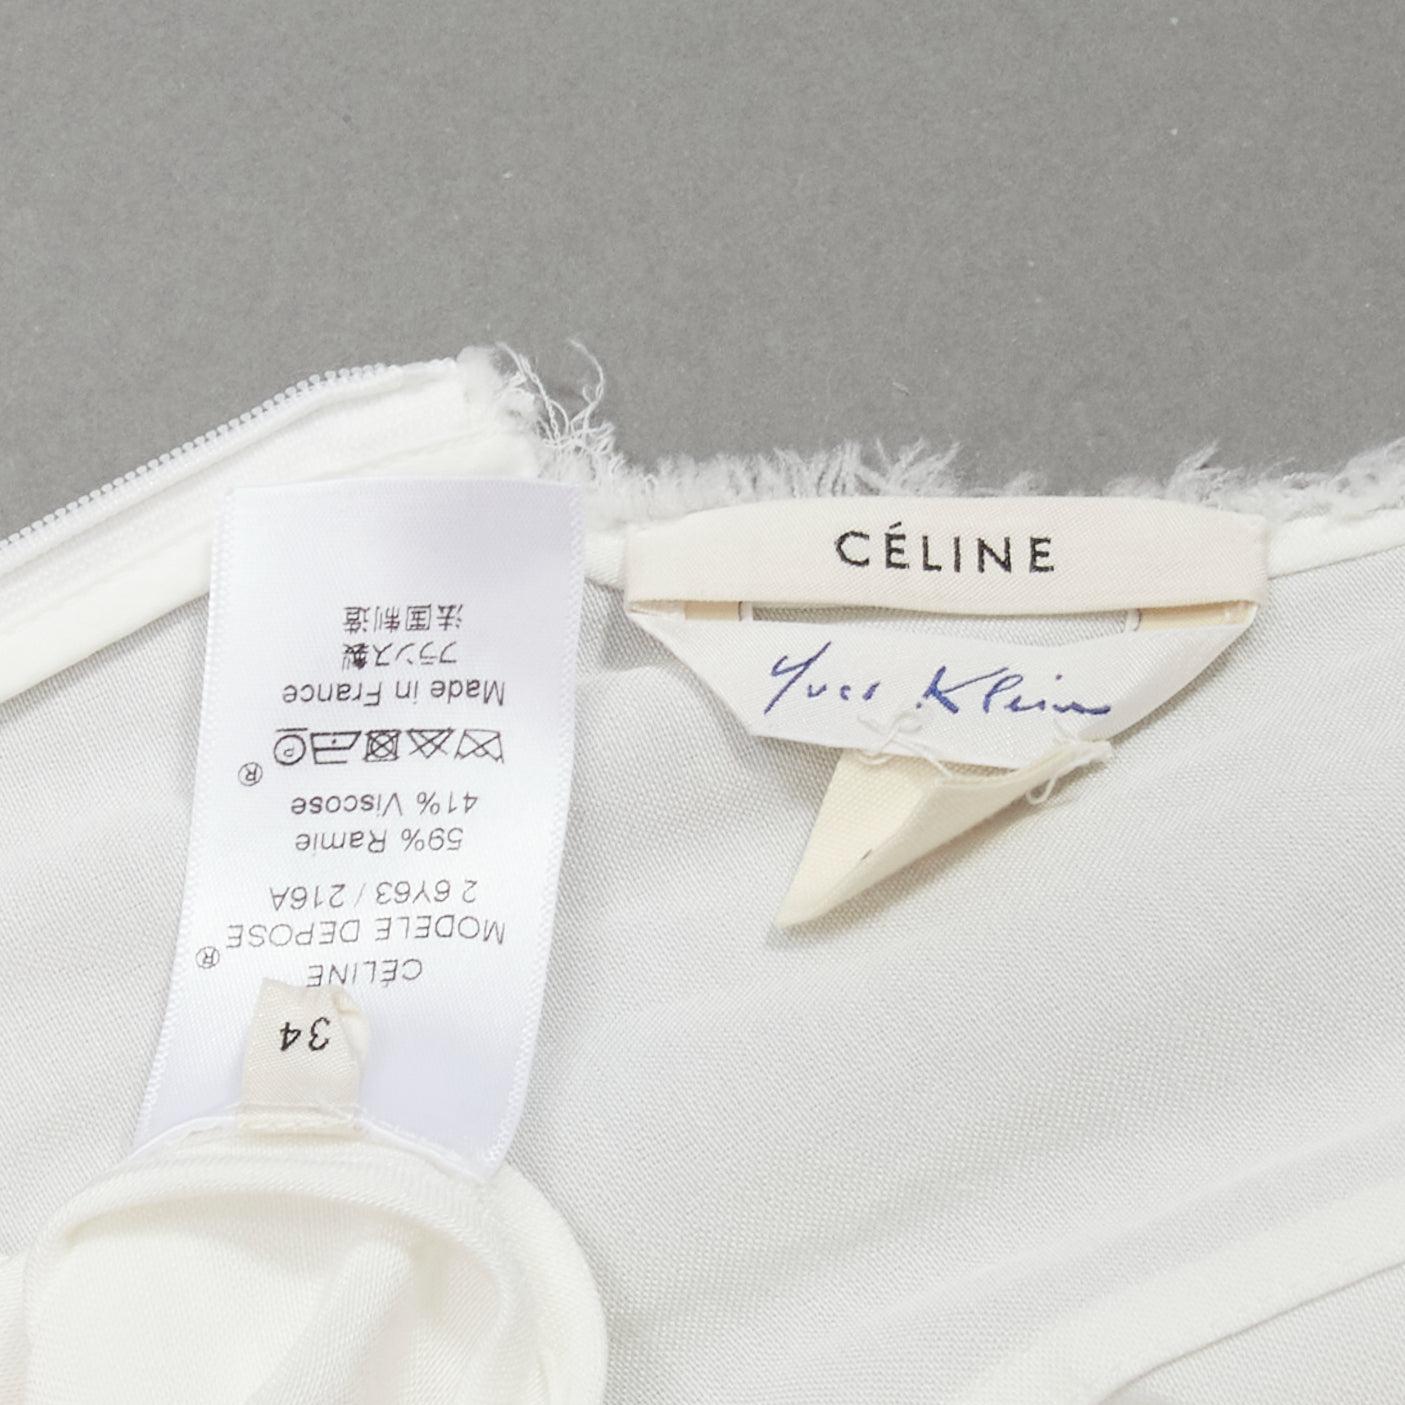 OLD CELINE Phoebe Philo 2017 Runway Yves Klein  body print white dress FR34  2